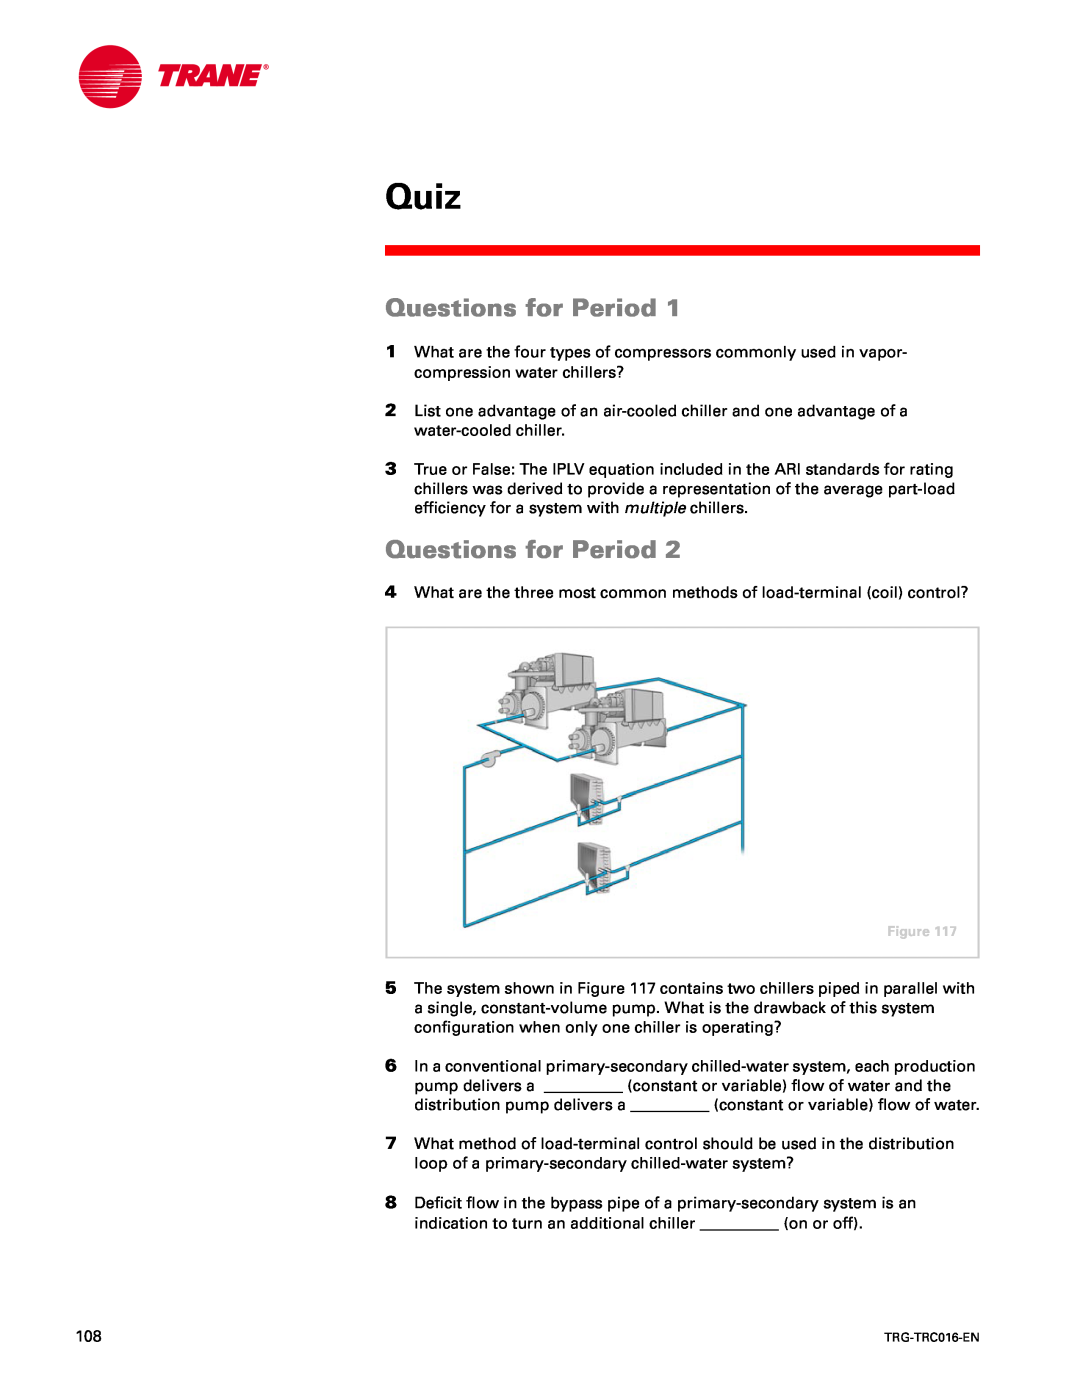 Trane TRG-TRC016-EN manual Quiz, Questions for Period 